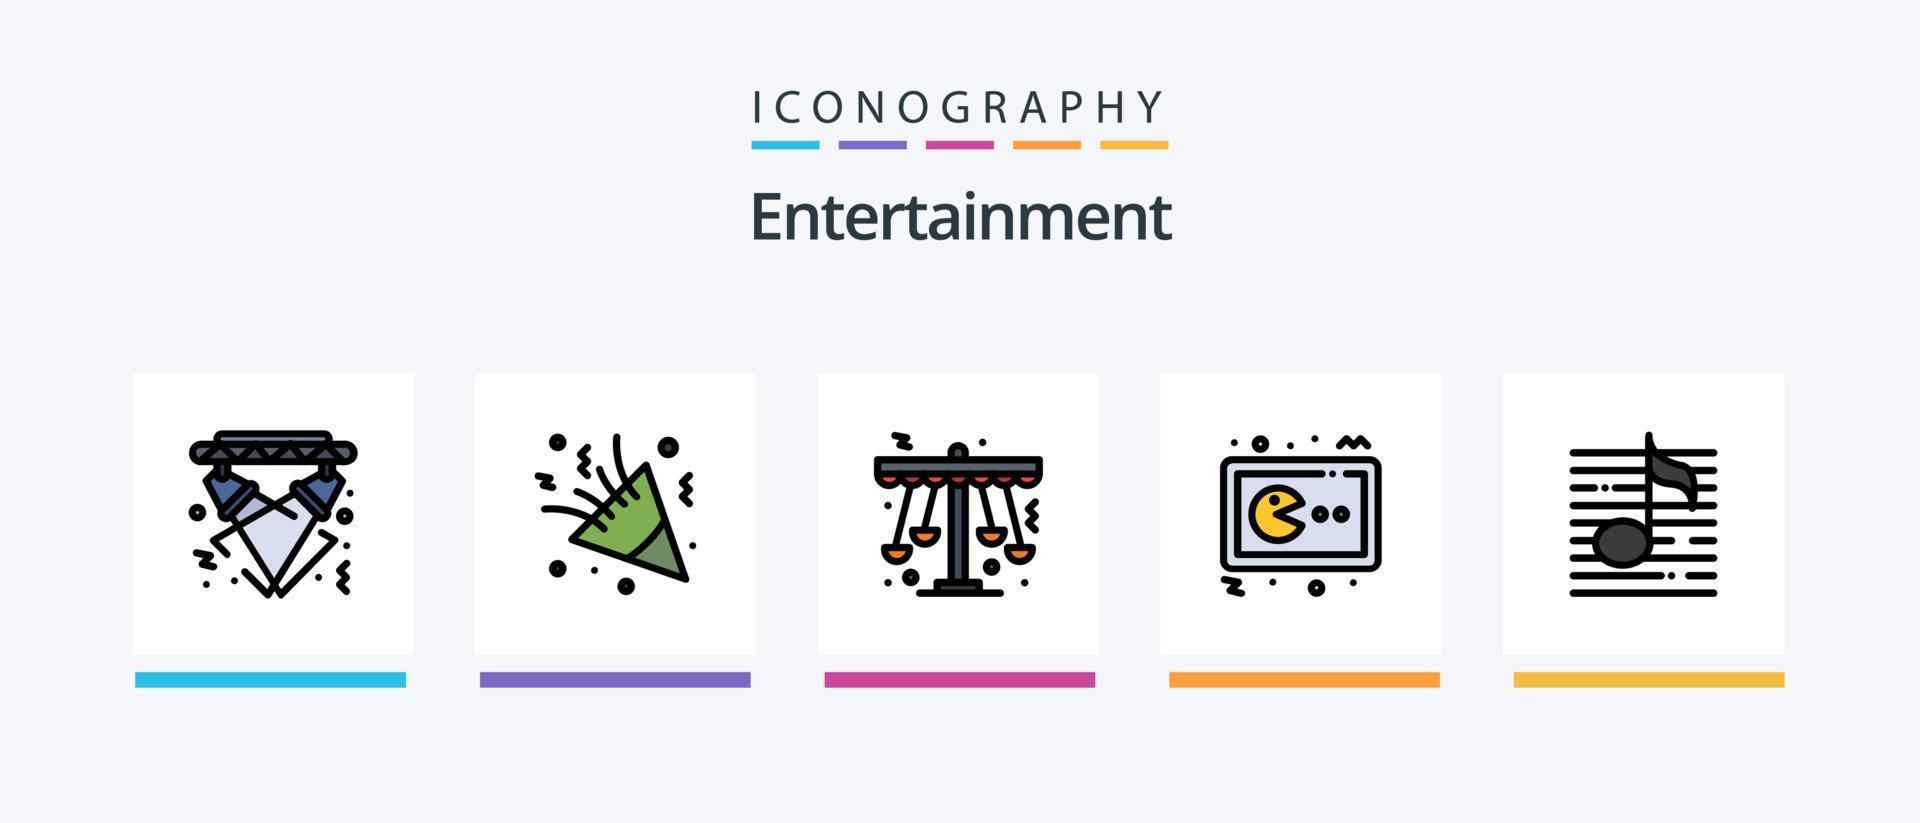 la línea de entretenimiento llenó el paquete de 5 iconos, incluido el carnaval. mascarilla. jugador. multimedia. cine. diseño de iconos creativos vector